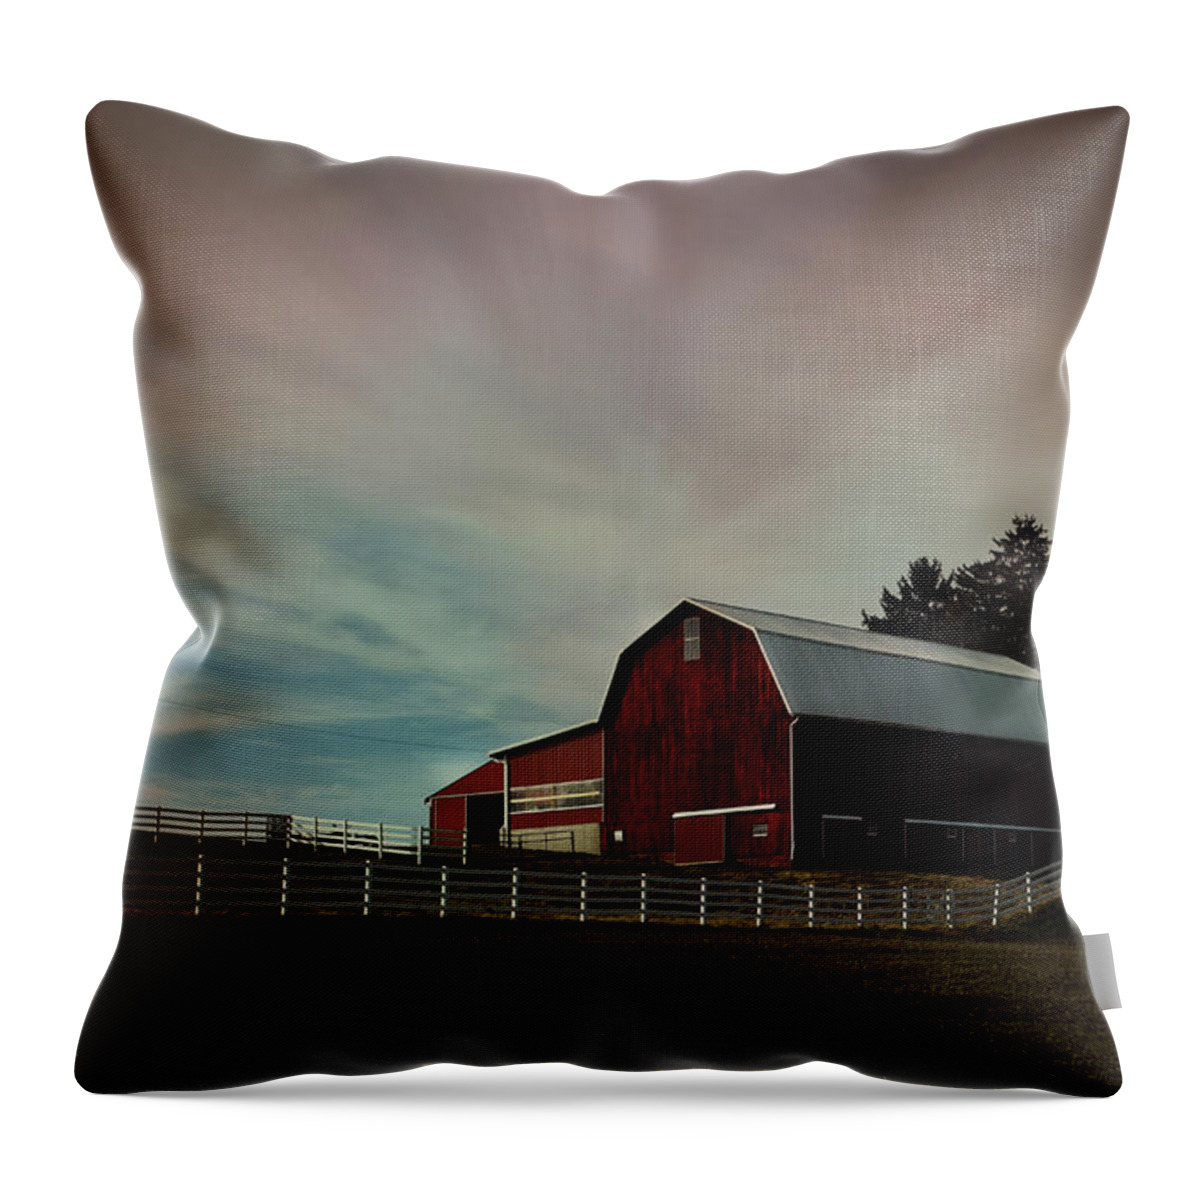 Barn Throw Pillow featuring the photograph Barn Sunrise by Ann Bridges